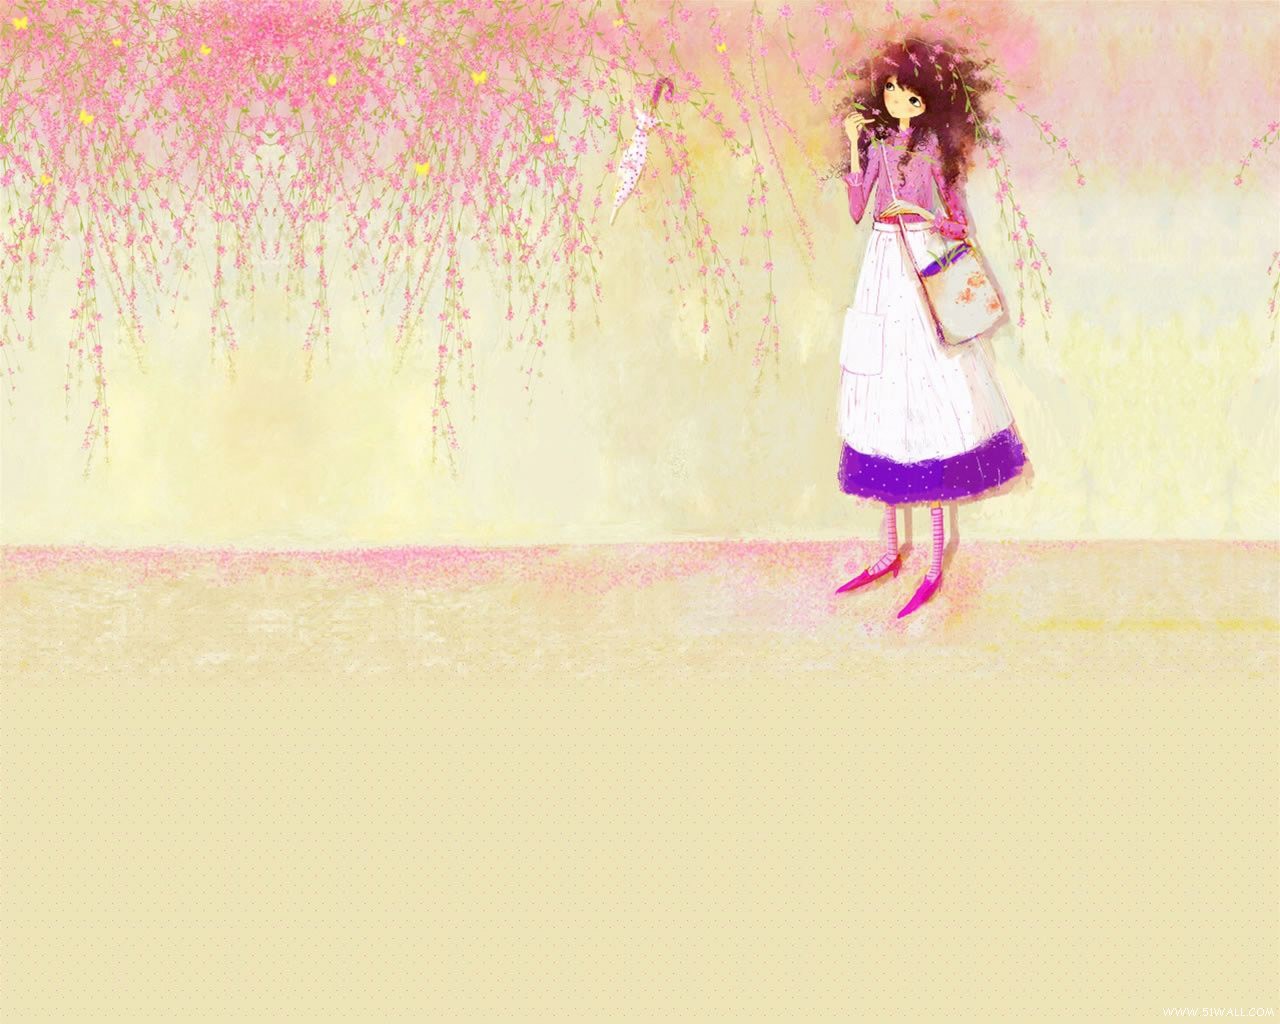 3d обои Девушка стоит под свисающими со стены цветами в которых запутался зонтик и летают жёлтые бабочки  насекомые # 59812